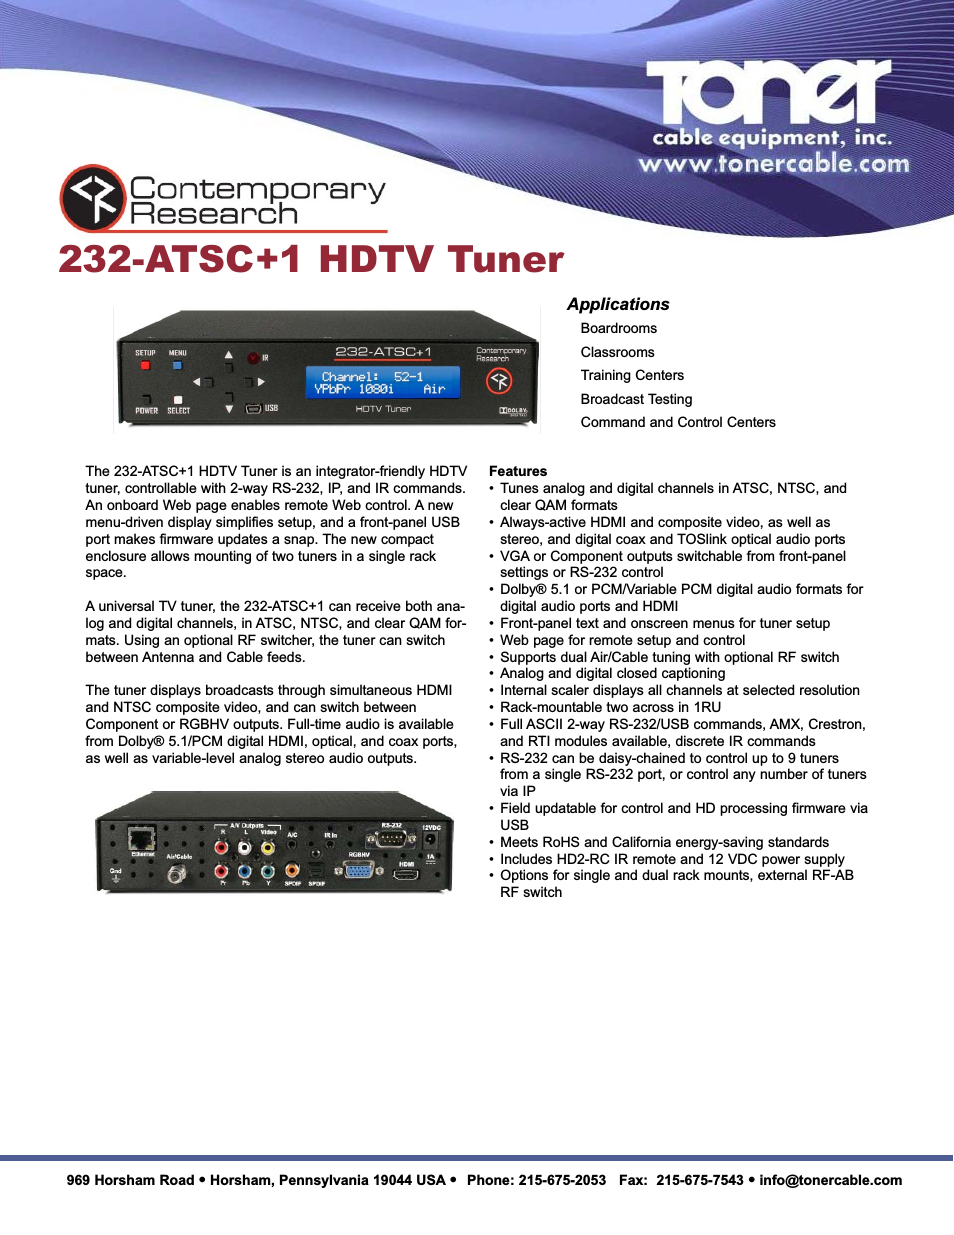 232-ATSC+1 HDTV Tuner